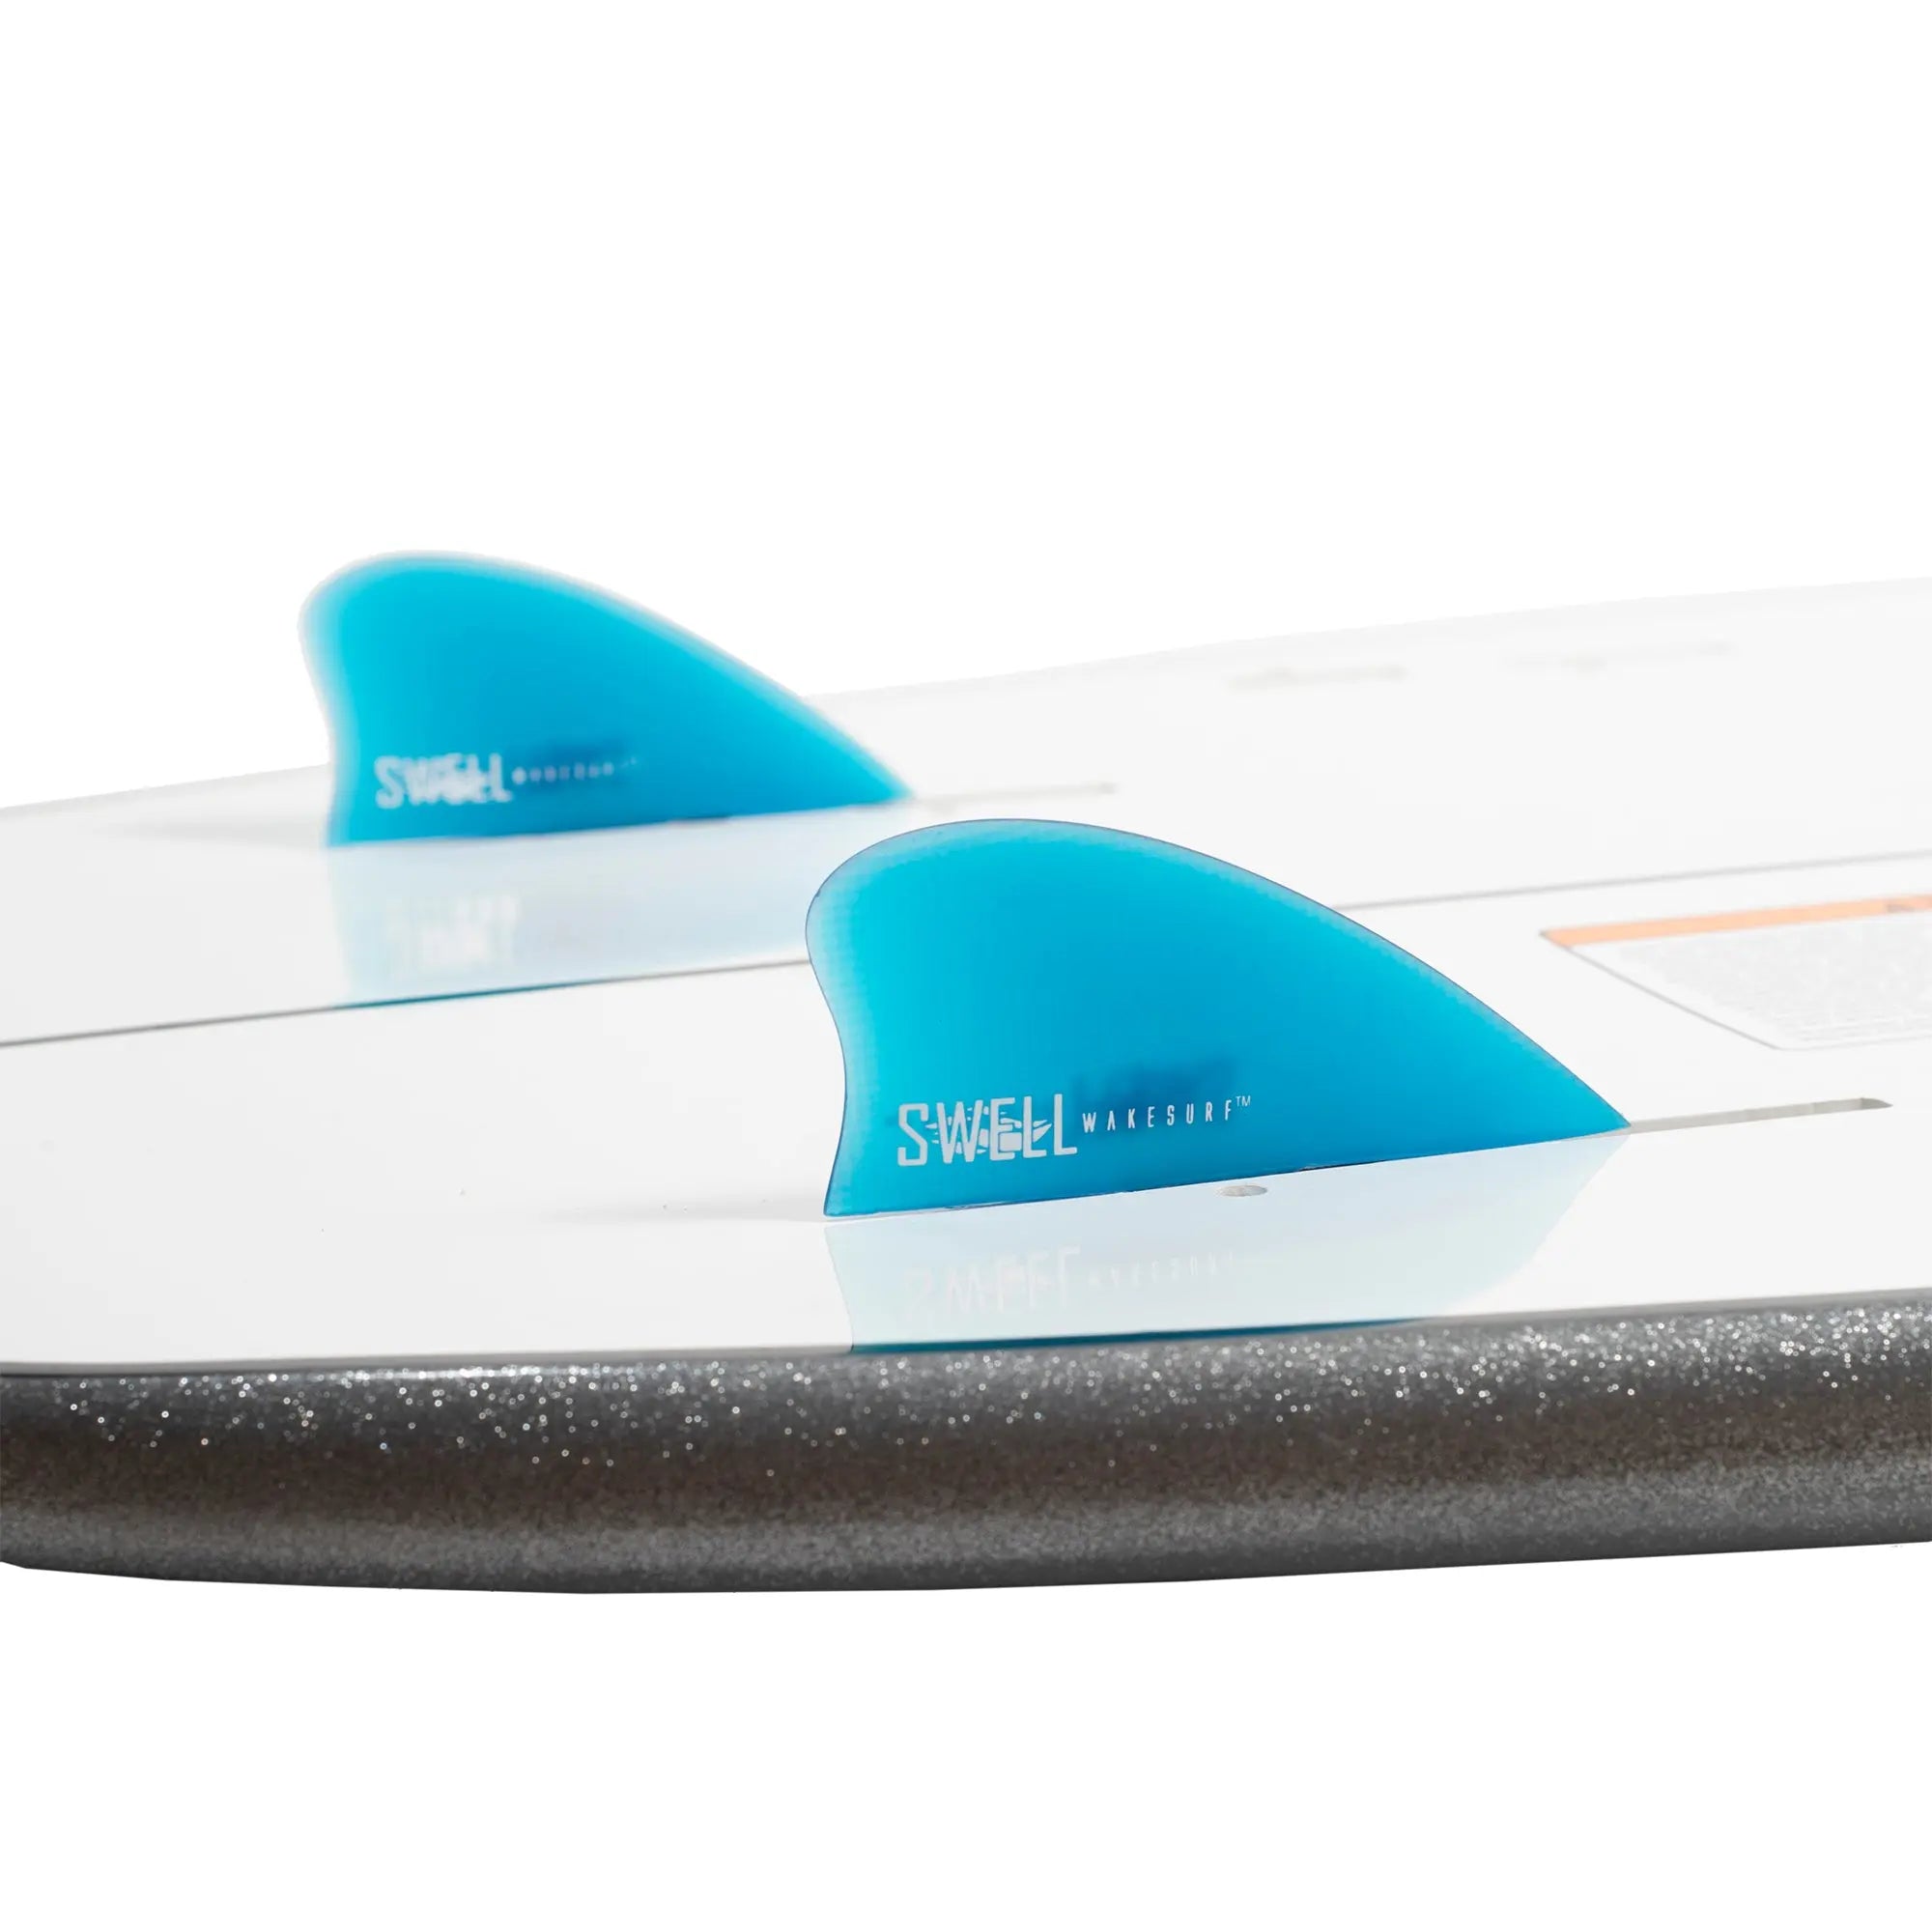 SWELL Wakesurf Fiberglass Fins - Nubster Set - 2 Fins SWELL Wakesurf